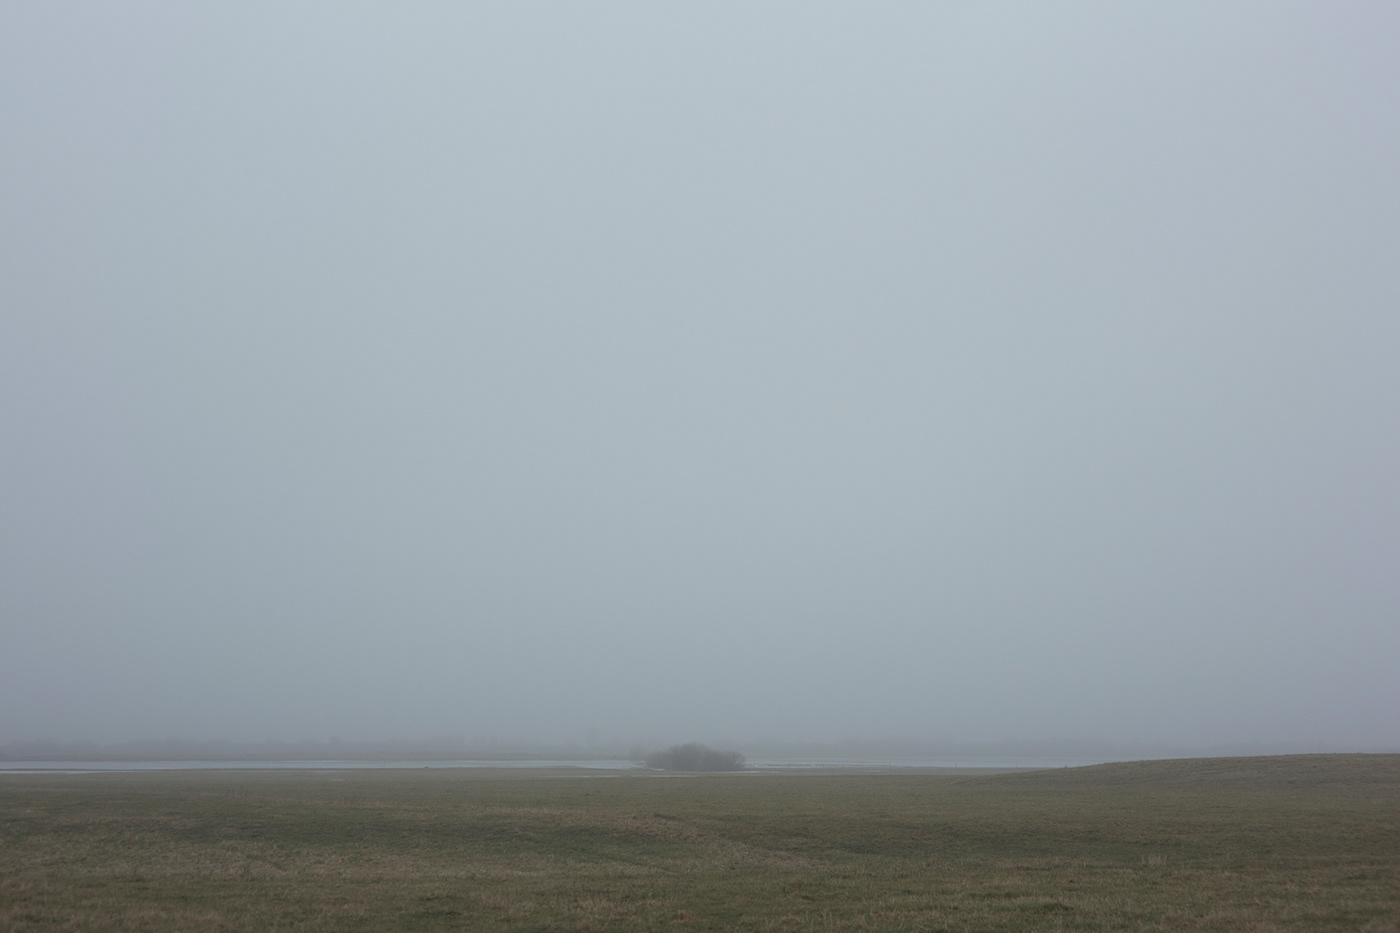 lietuva lithuania fog mist Landscape minimal Minimalism mood